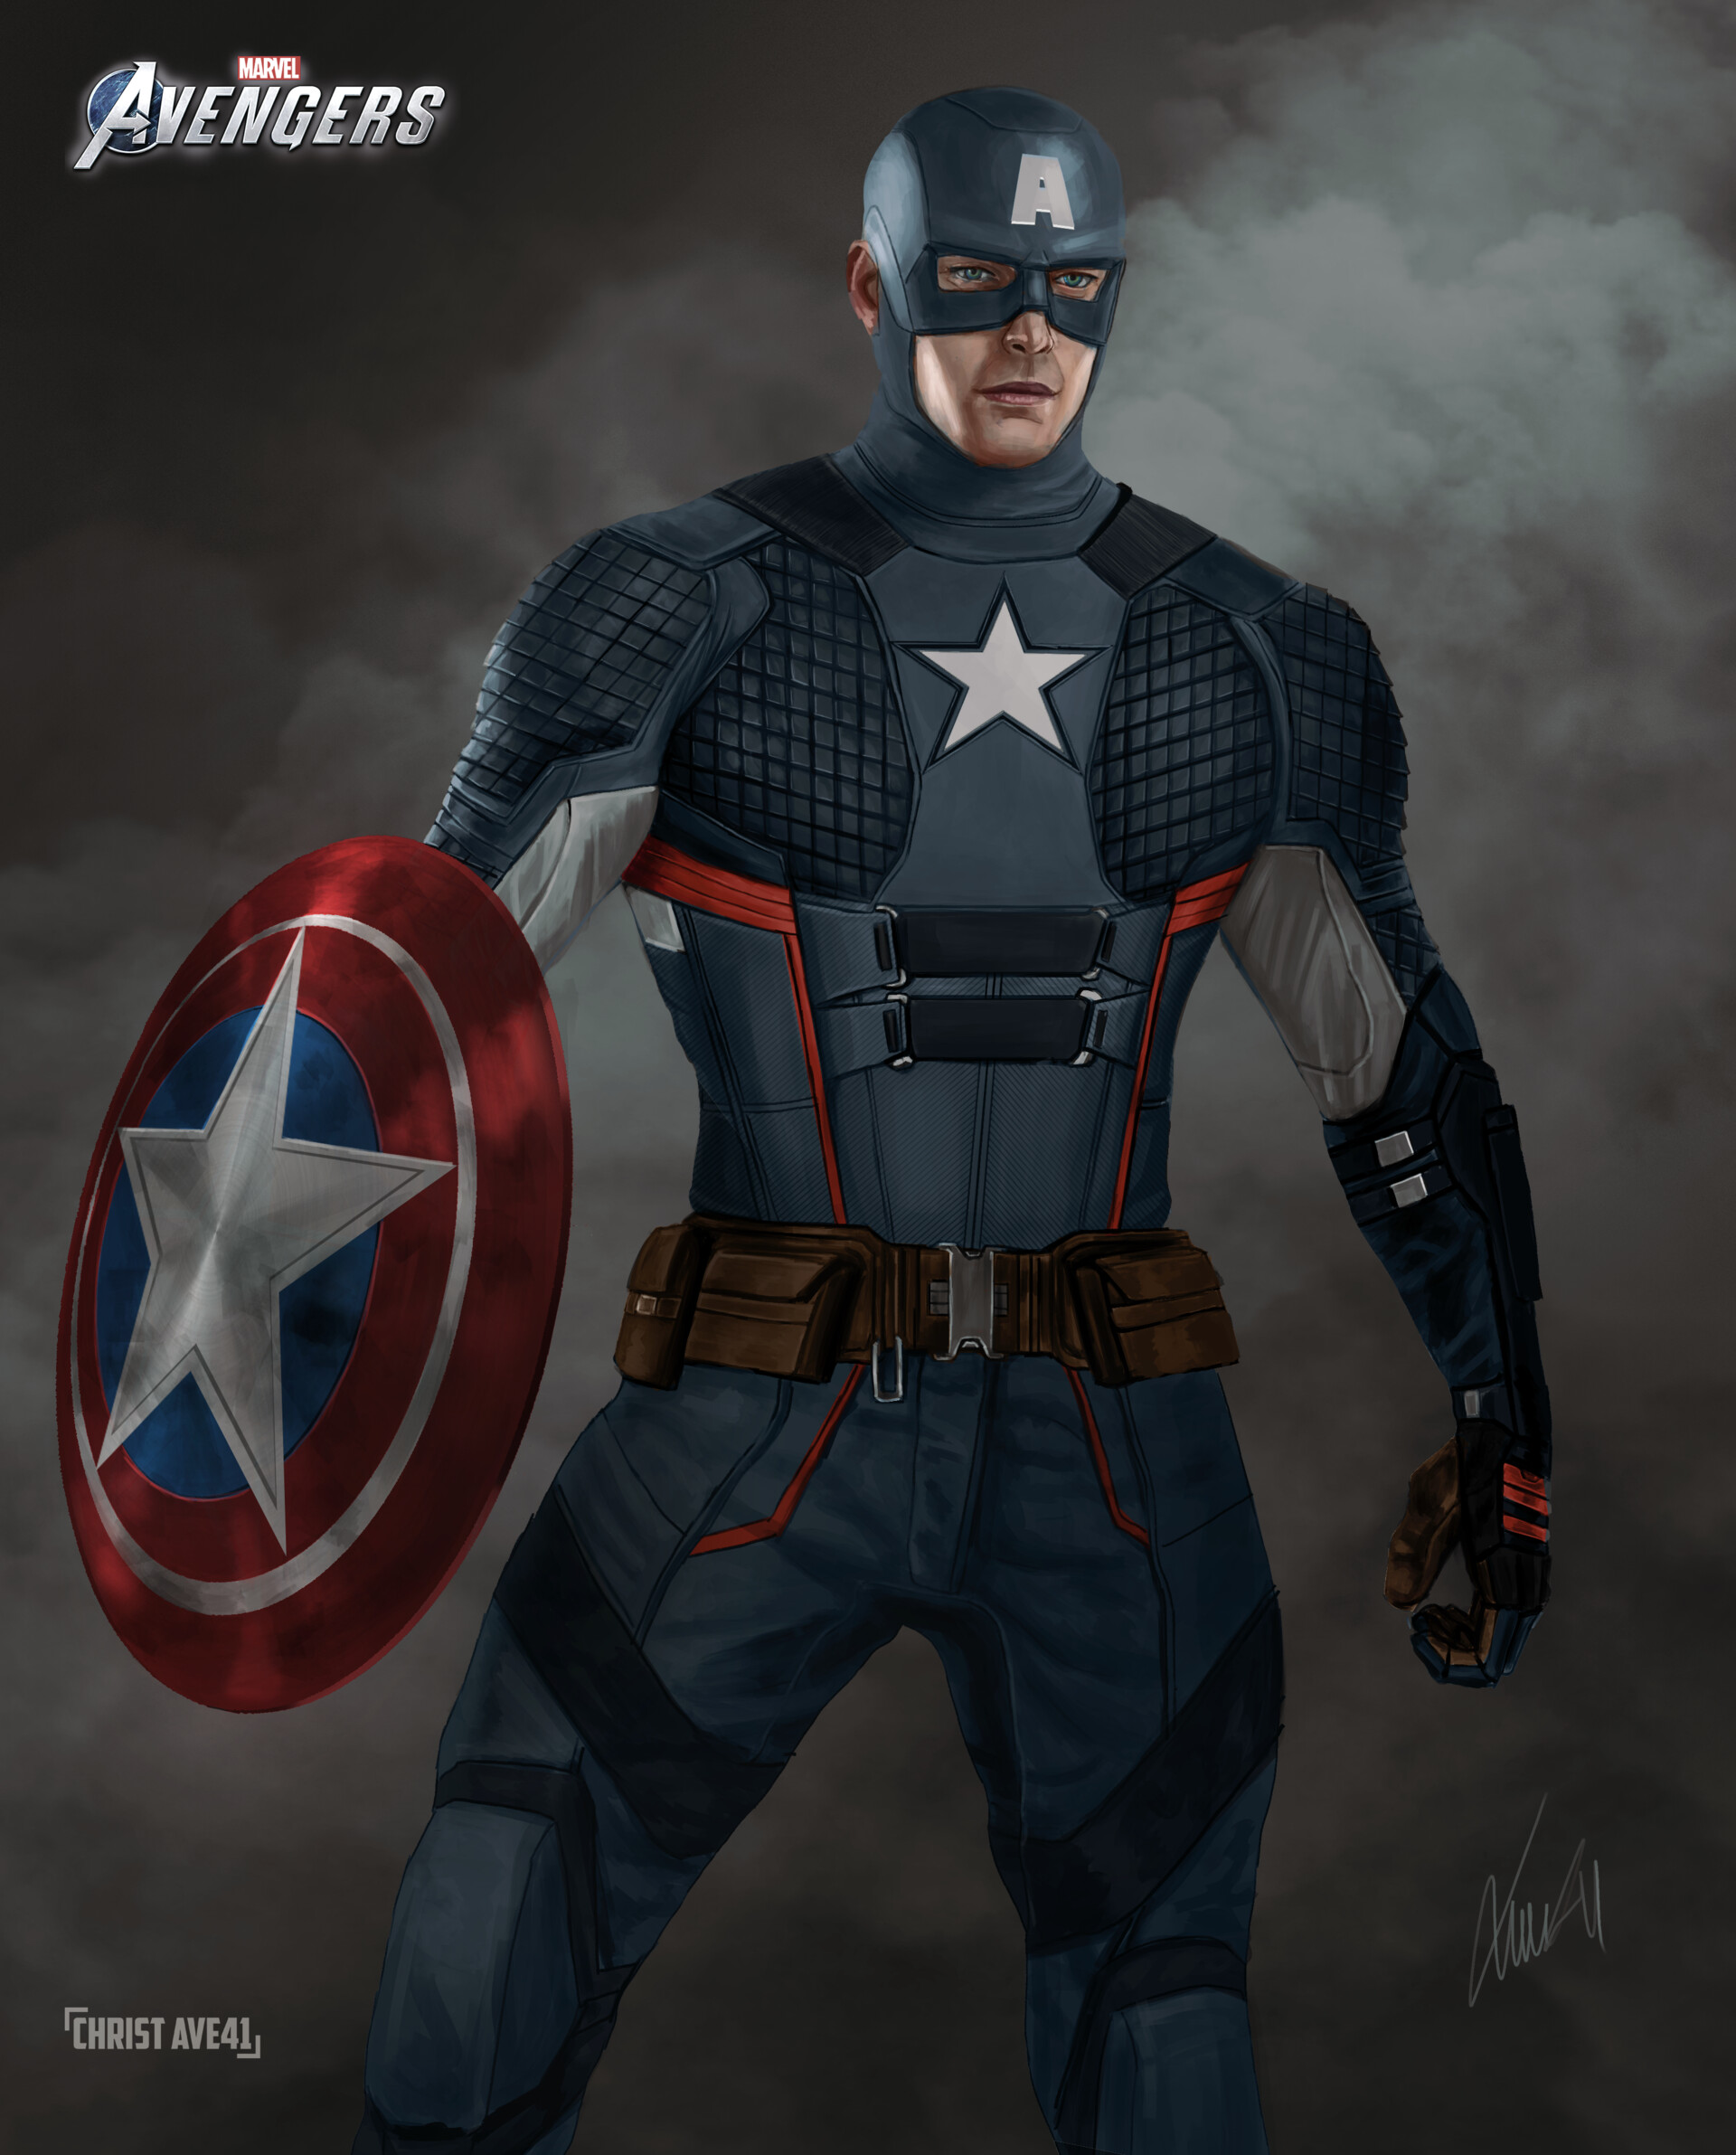 Christ Ave41 - Captain America Marvel's Avengers Fanart